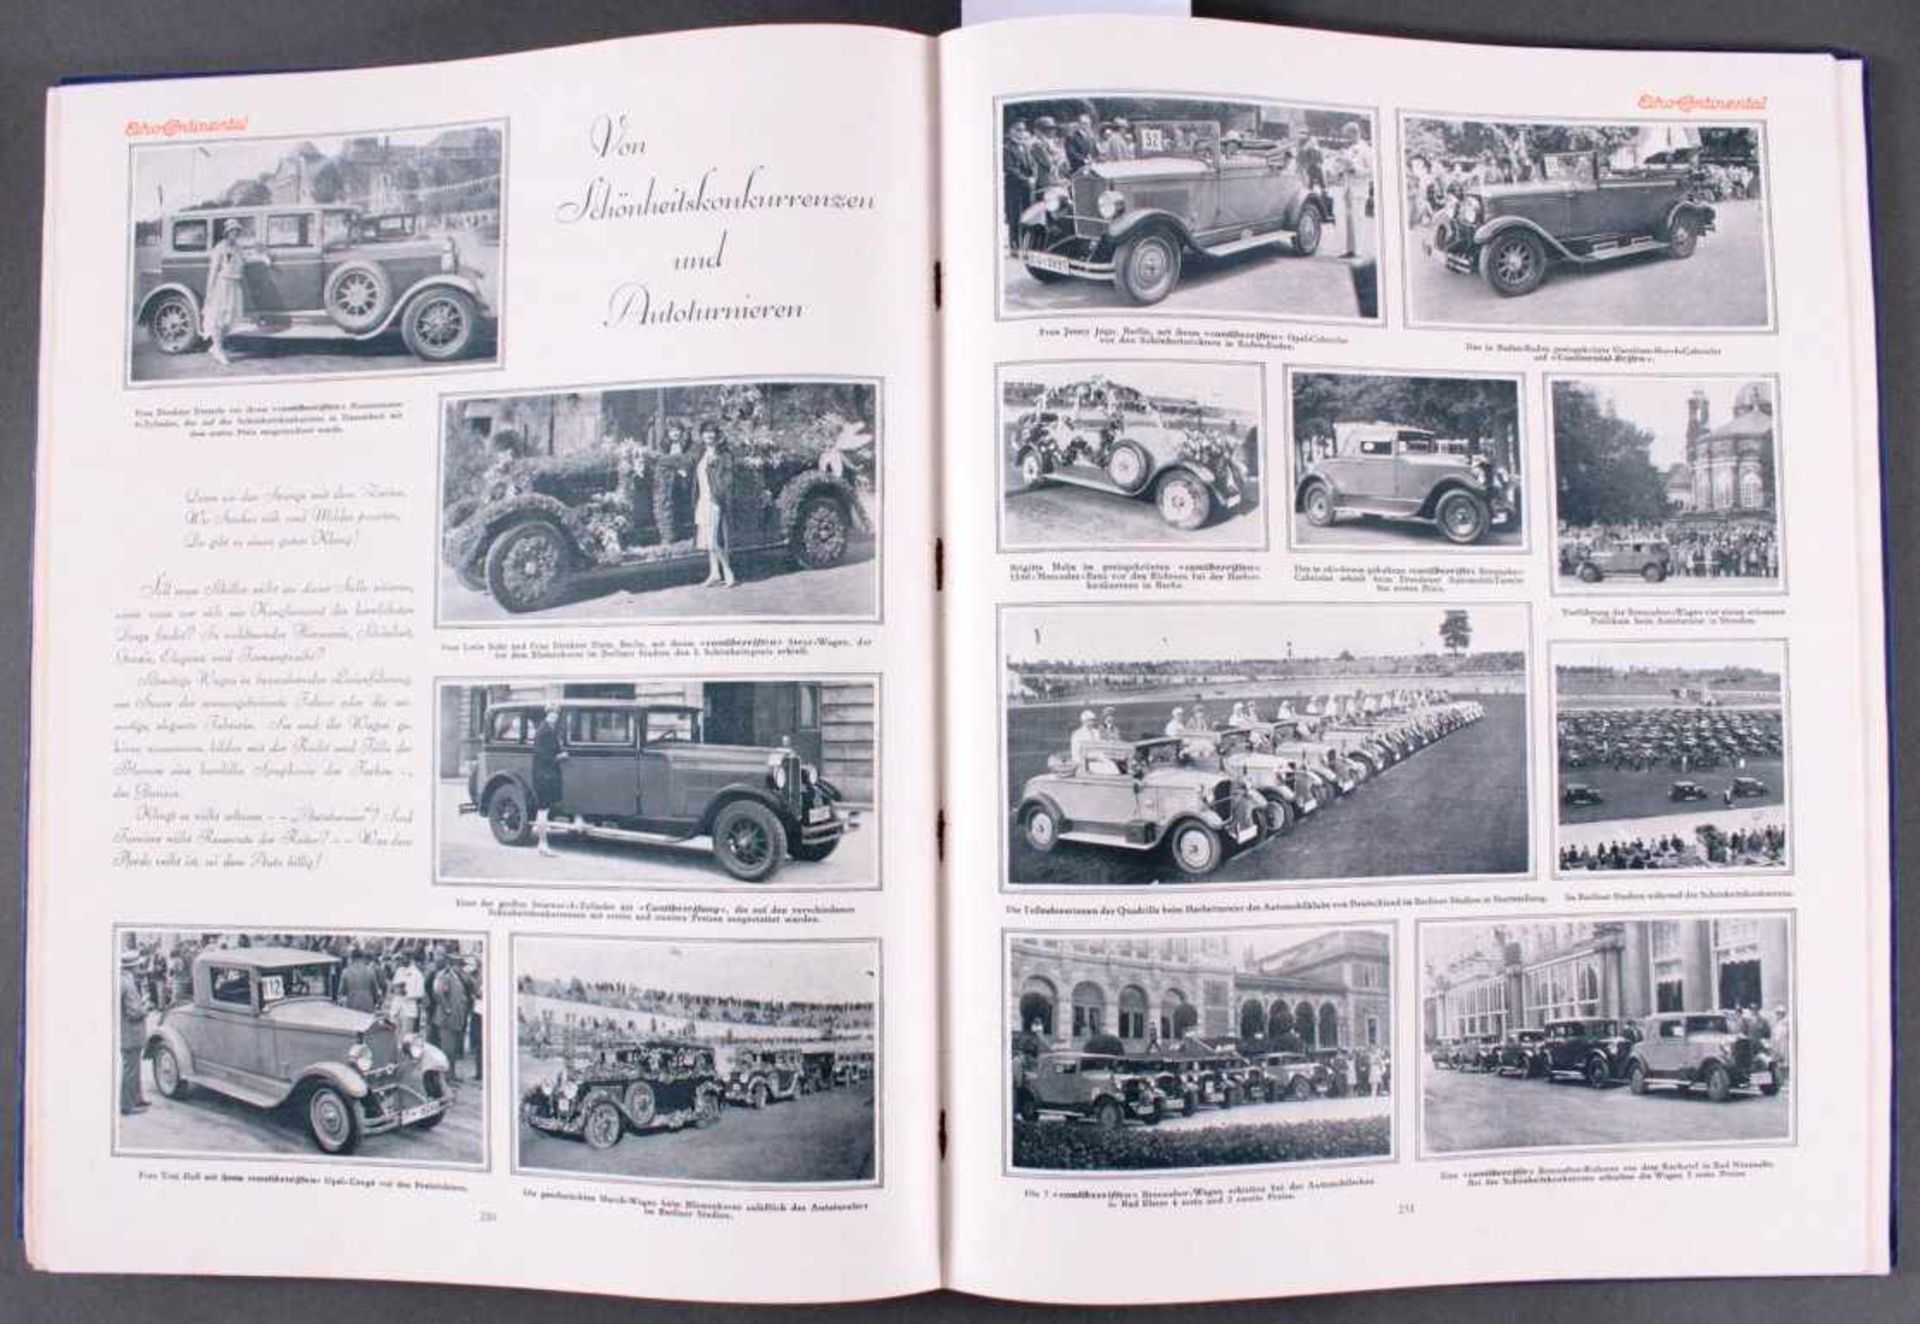 Echo Continental Jahrgang 1928Caoutschouc-Compagnie GmbH Hannover, Abbildungen und Textzum Thema - Image 7 of 7